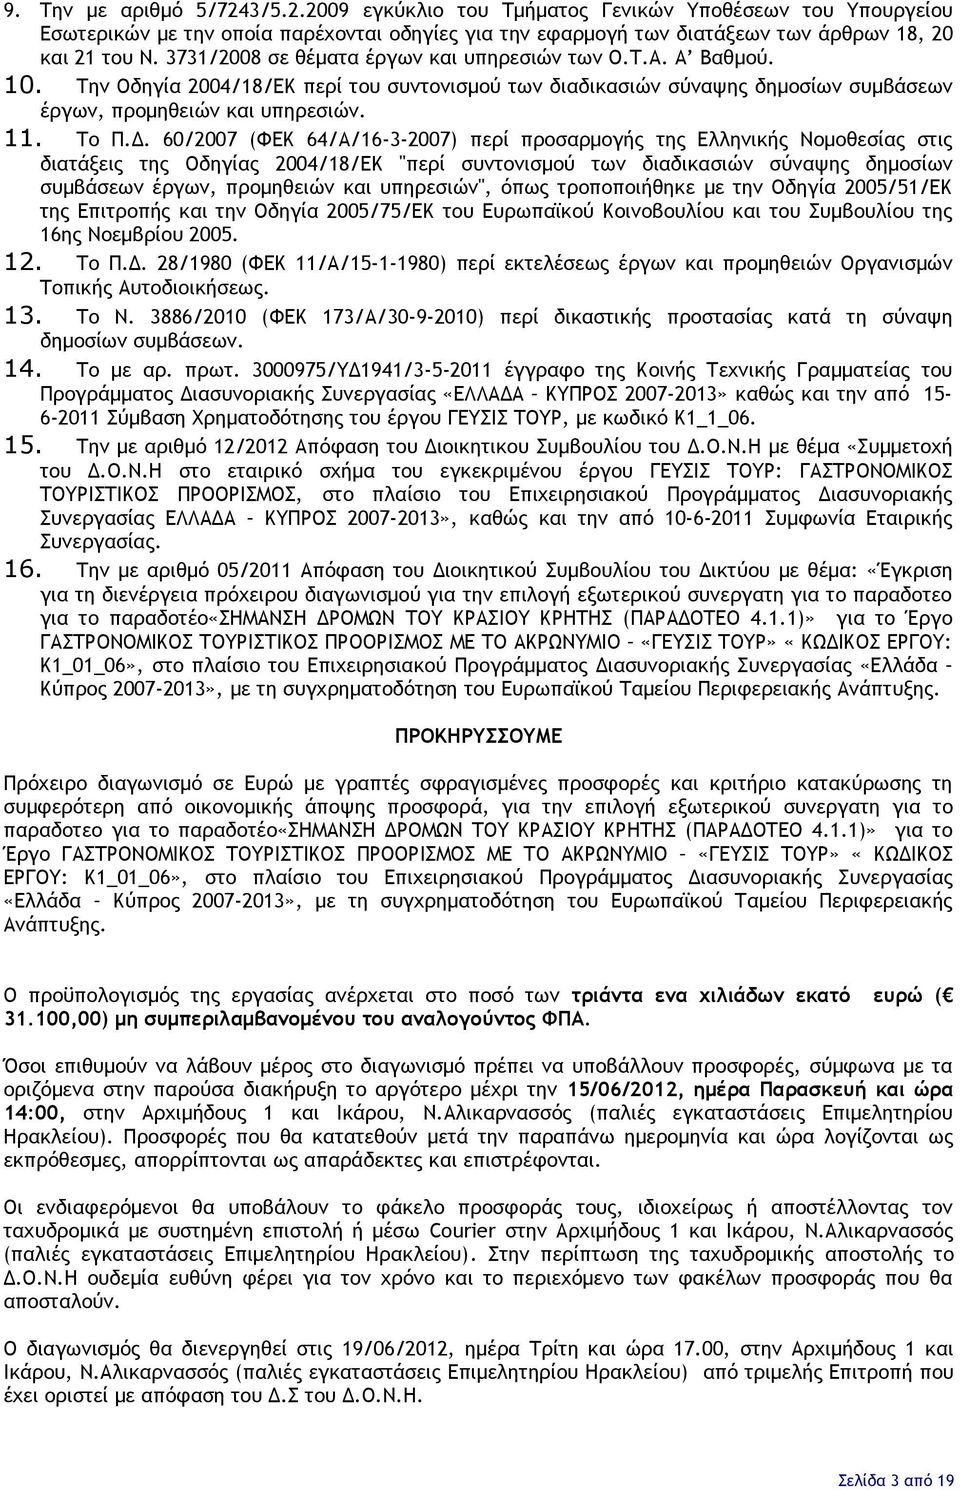 60/2007 (ΦΕΚ 64/Α/16-3-2007) περί προσαρμογής της Ελληνικής Νομοθεσίας στις διατάξεις της Οδηγίας 2004/18/ΕΚ "περί συντονισμού των διαδικασιών σύναψης δημοσίων συμβάσεων έργων, προμηθειών και